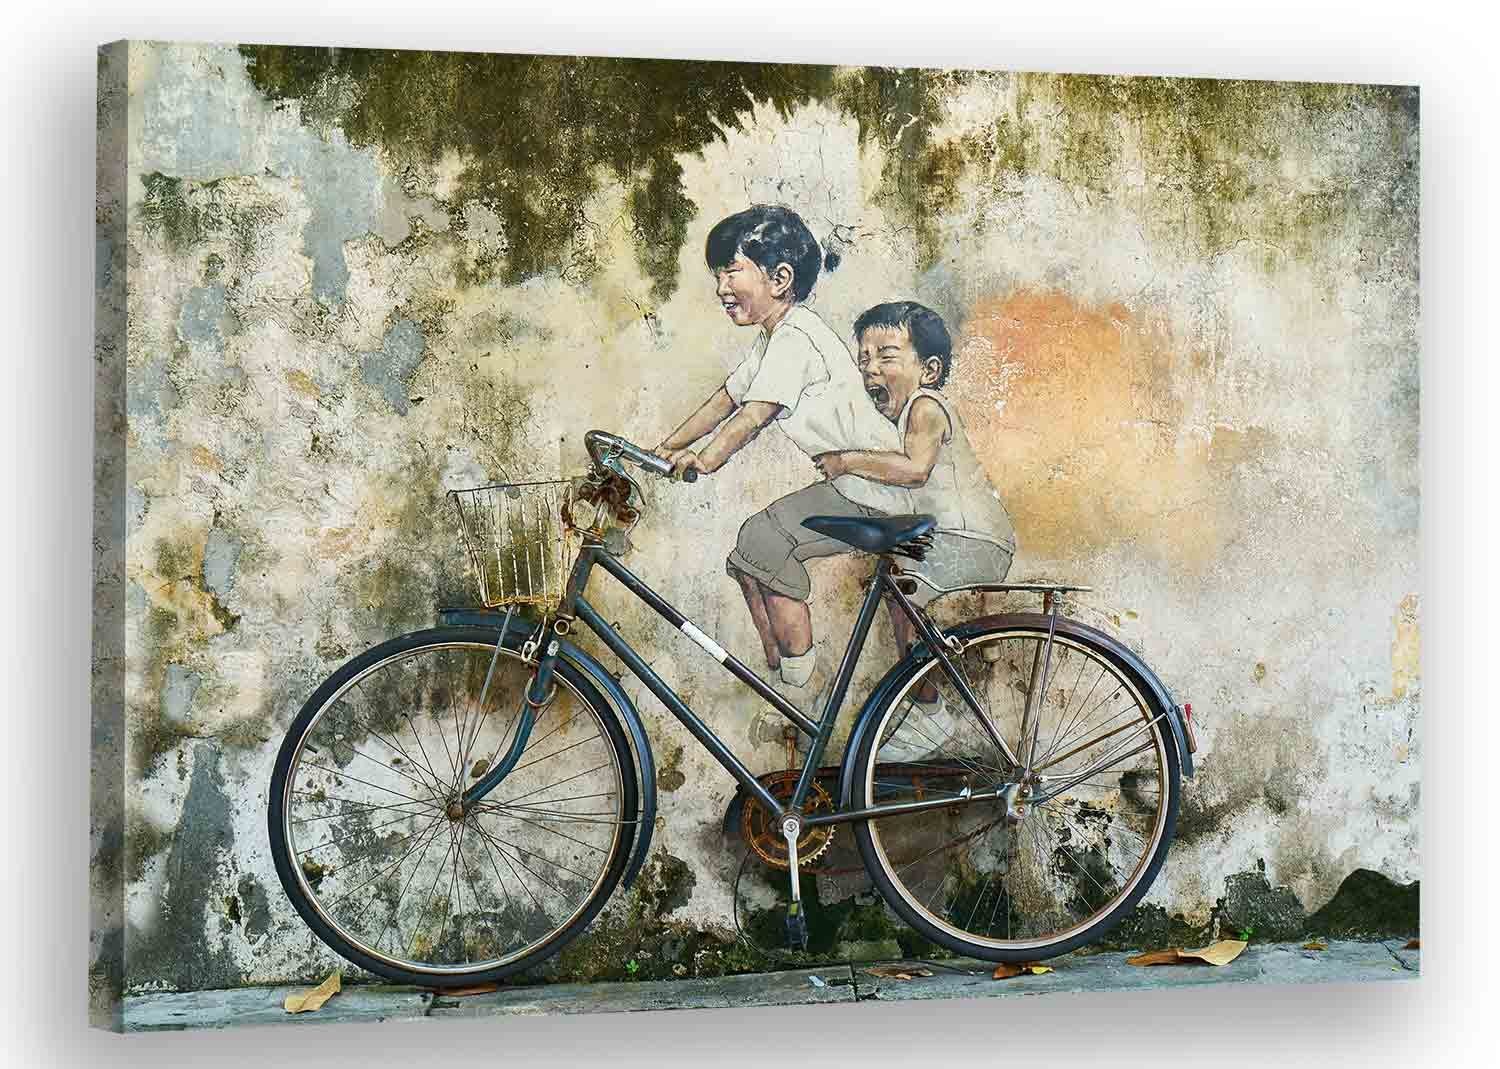 Leinwando Gemälde Wandbild / Kinder auf einem Fahrrad - Klassisch Asiatische Kunst / Gemälde bereit zum aufhängen